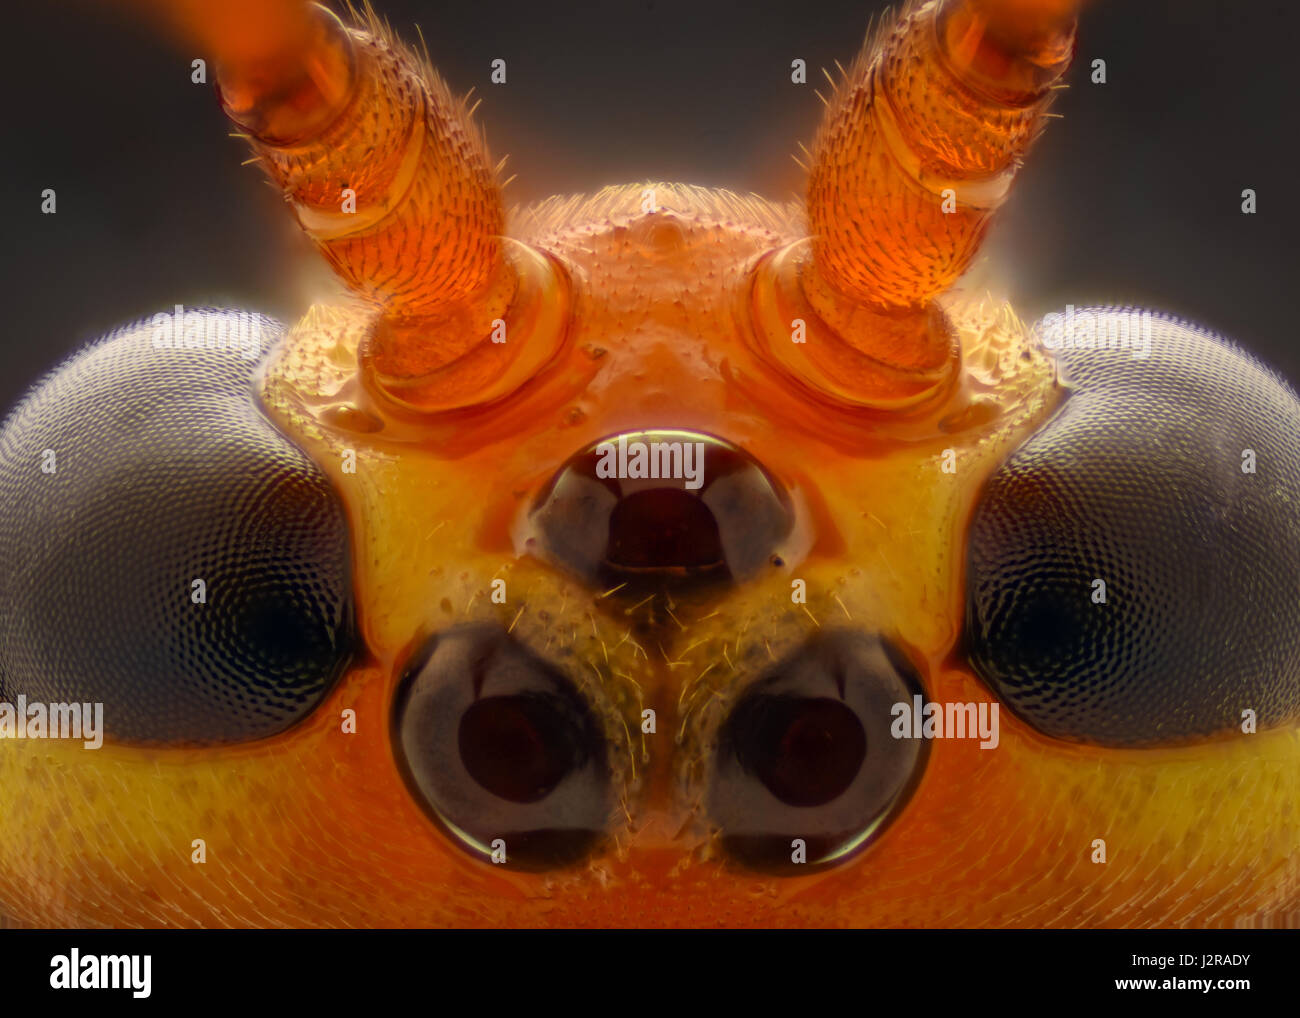 Mikroskop biene Flügel Stockfotografie - Alamy